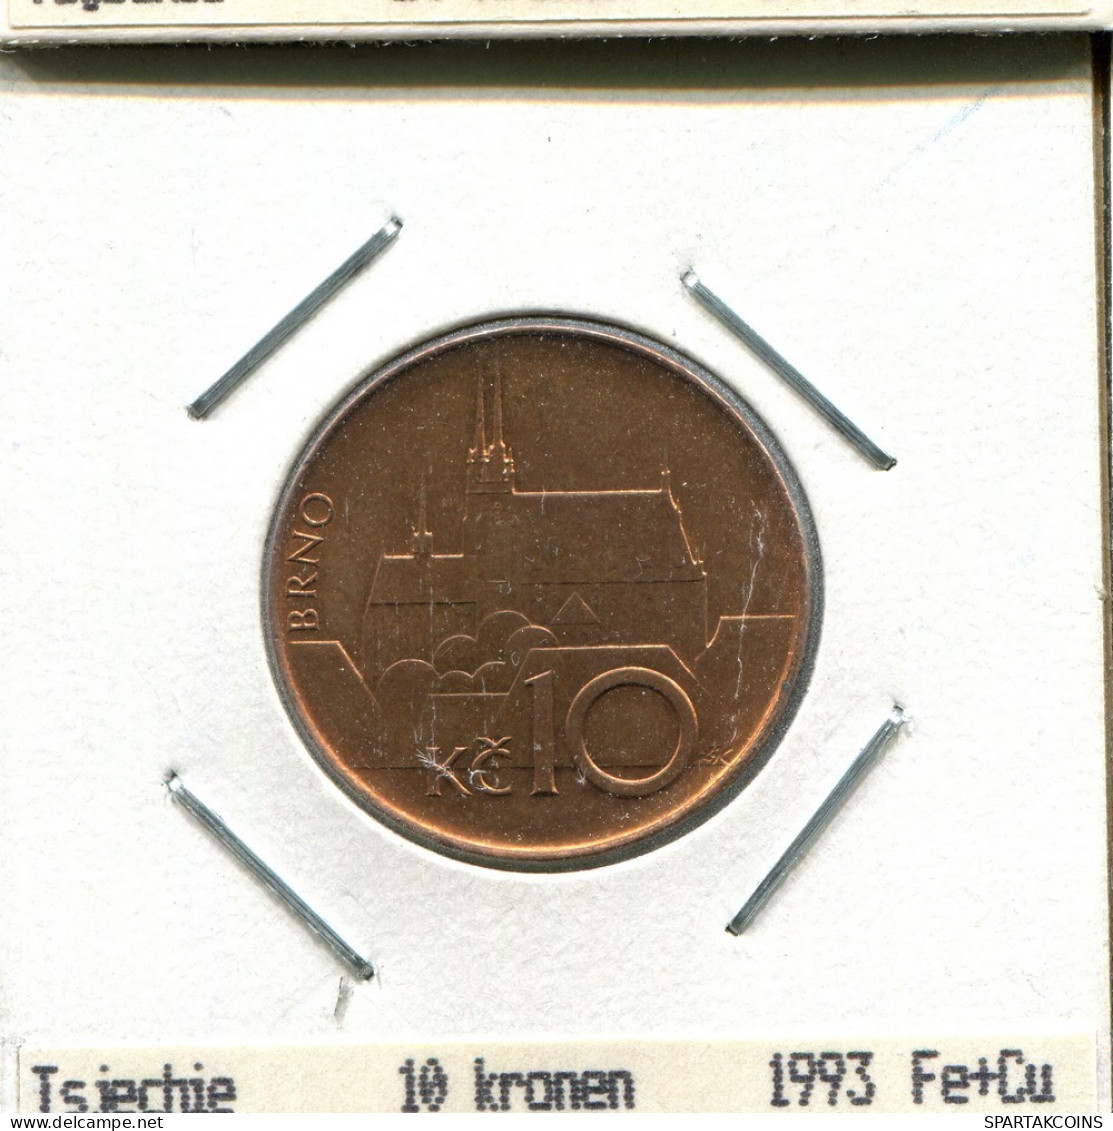 10 KORUN 1993 CHECOSLOVAQUIA CZECHOESLOVAQUIA SLOVAKIA Moneda #AS543.E.A - Czechoslovakia